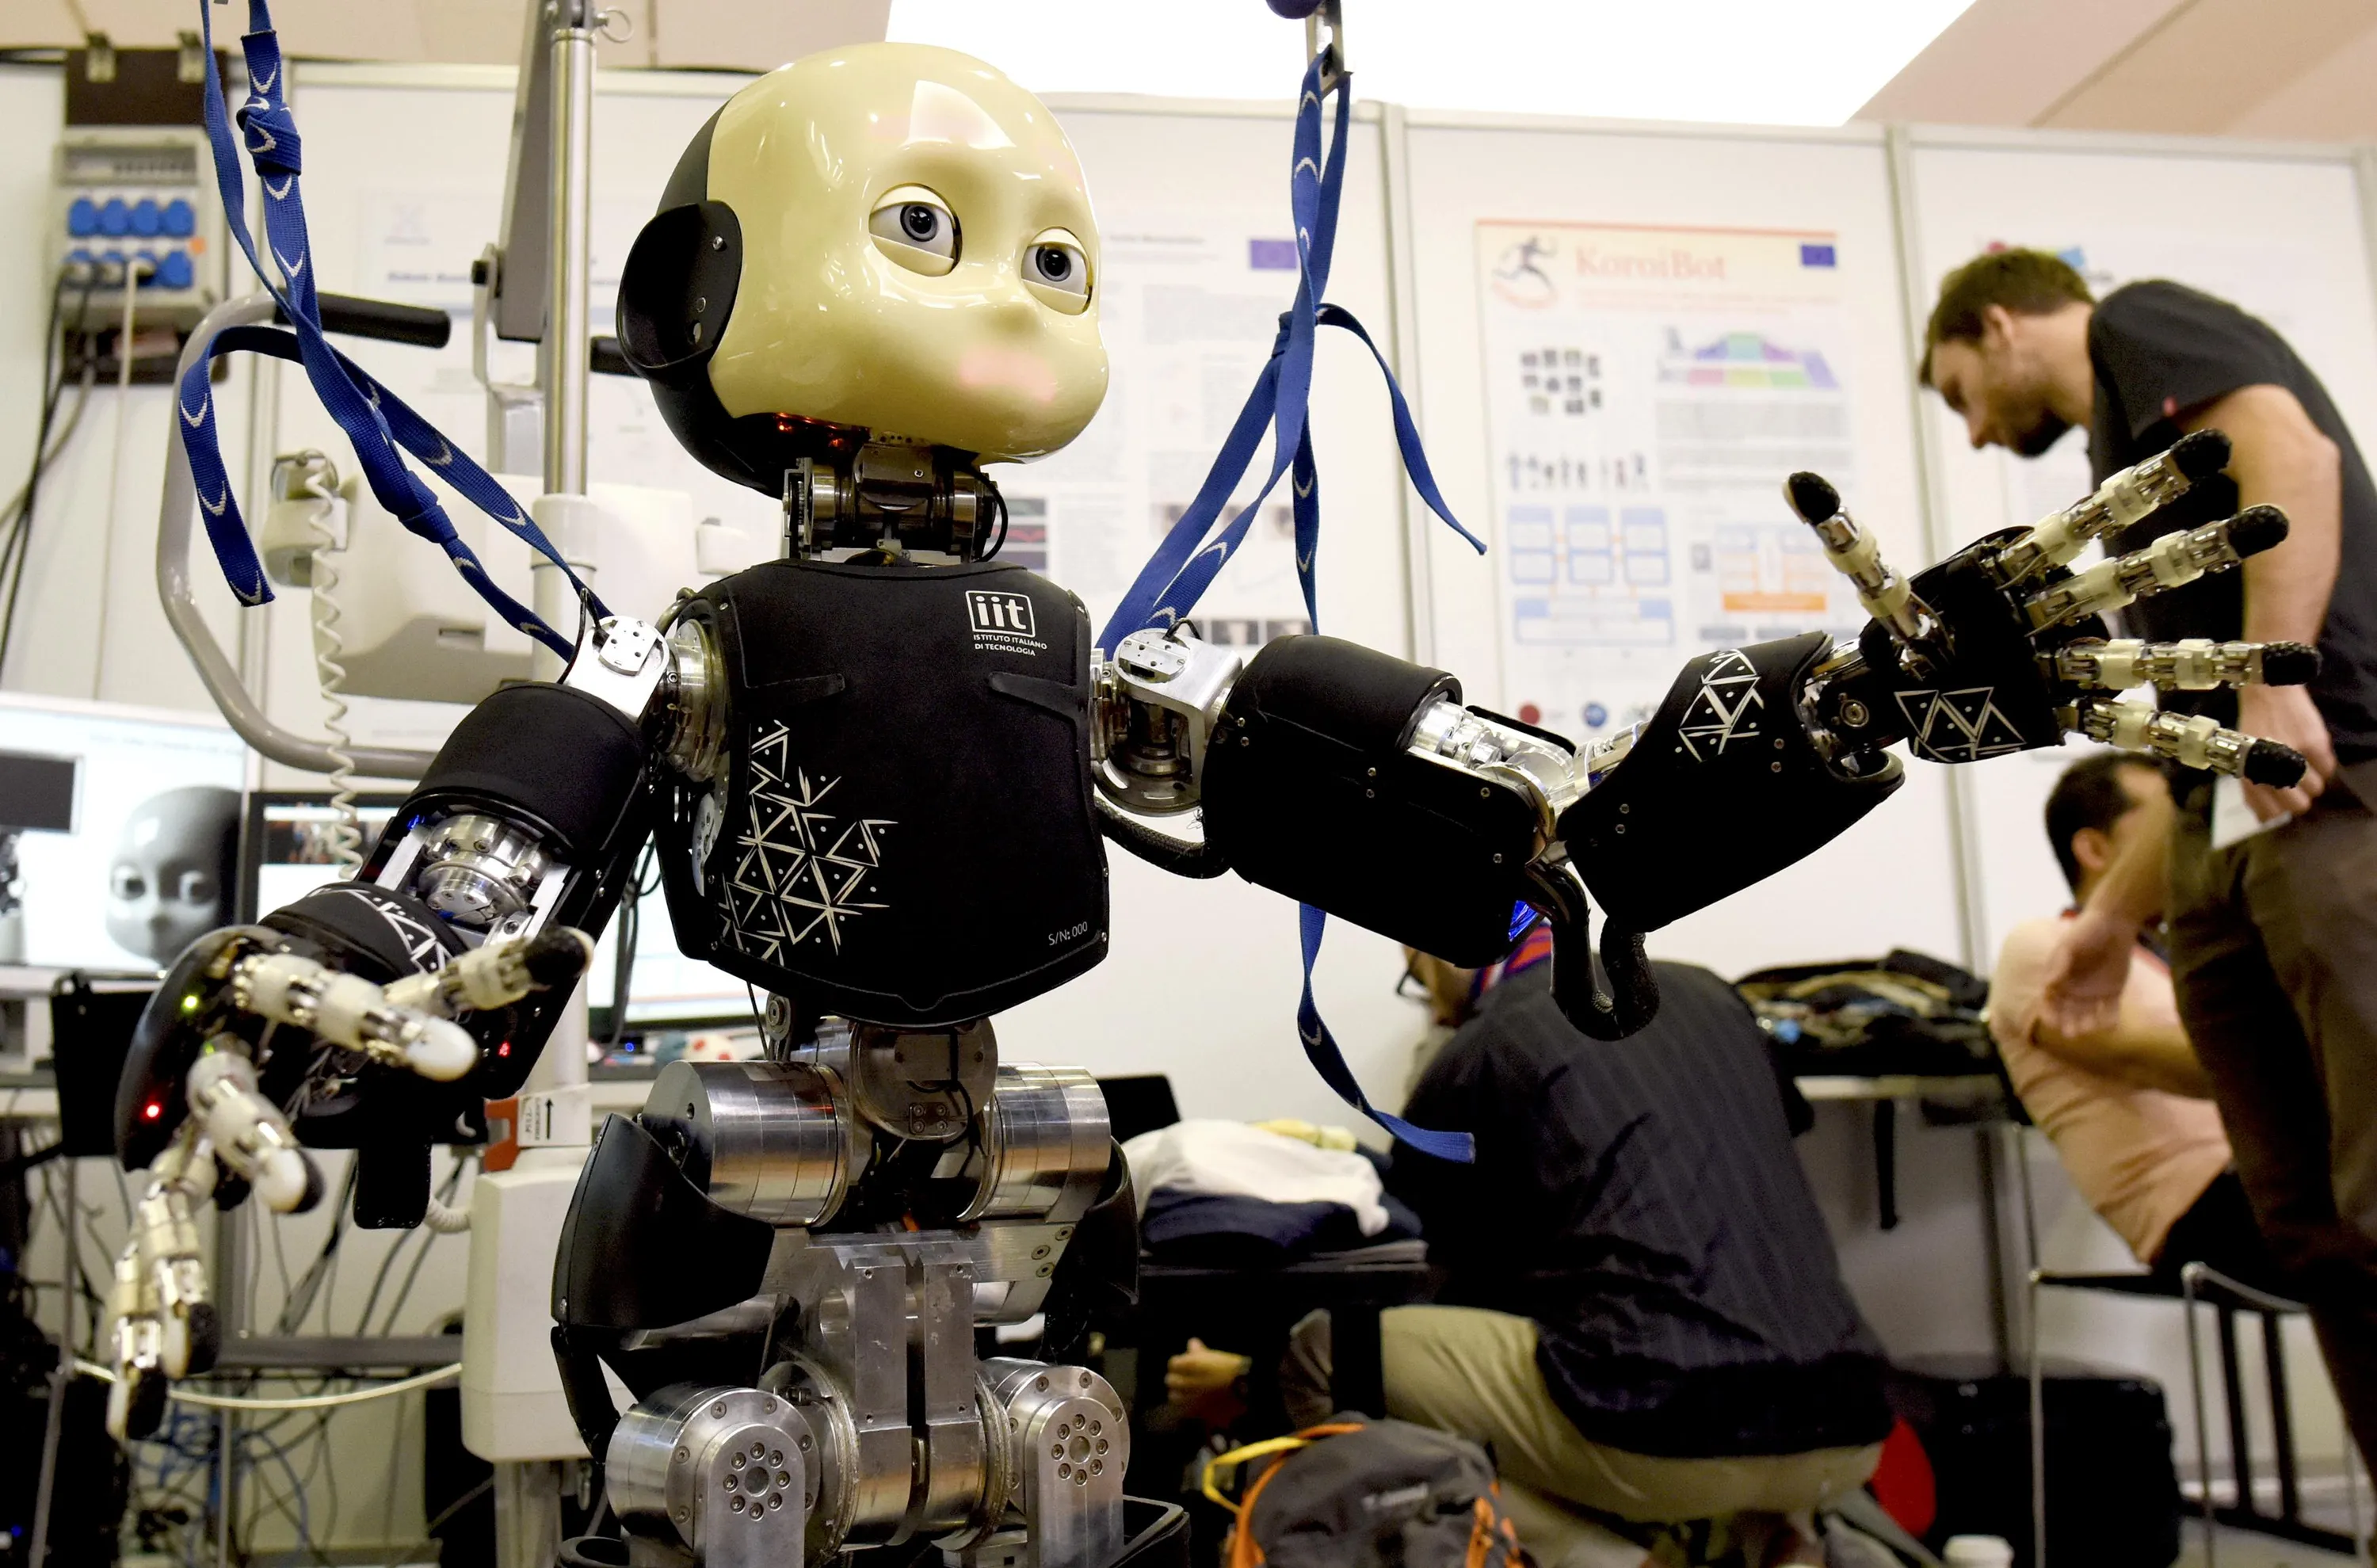 Практика применения искусственного интеллекта. Современные роботы. Робототехника и искусственный интеллект. Искусственный робот. Интеллектуальные роботы.